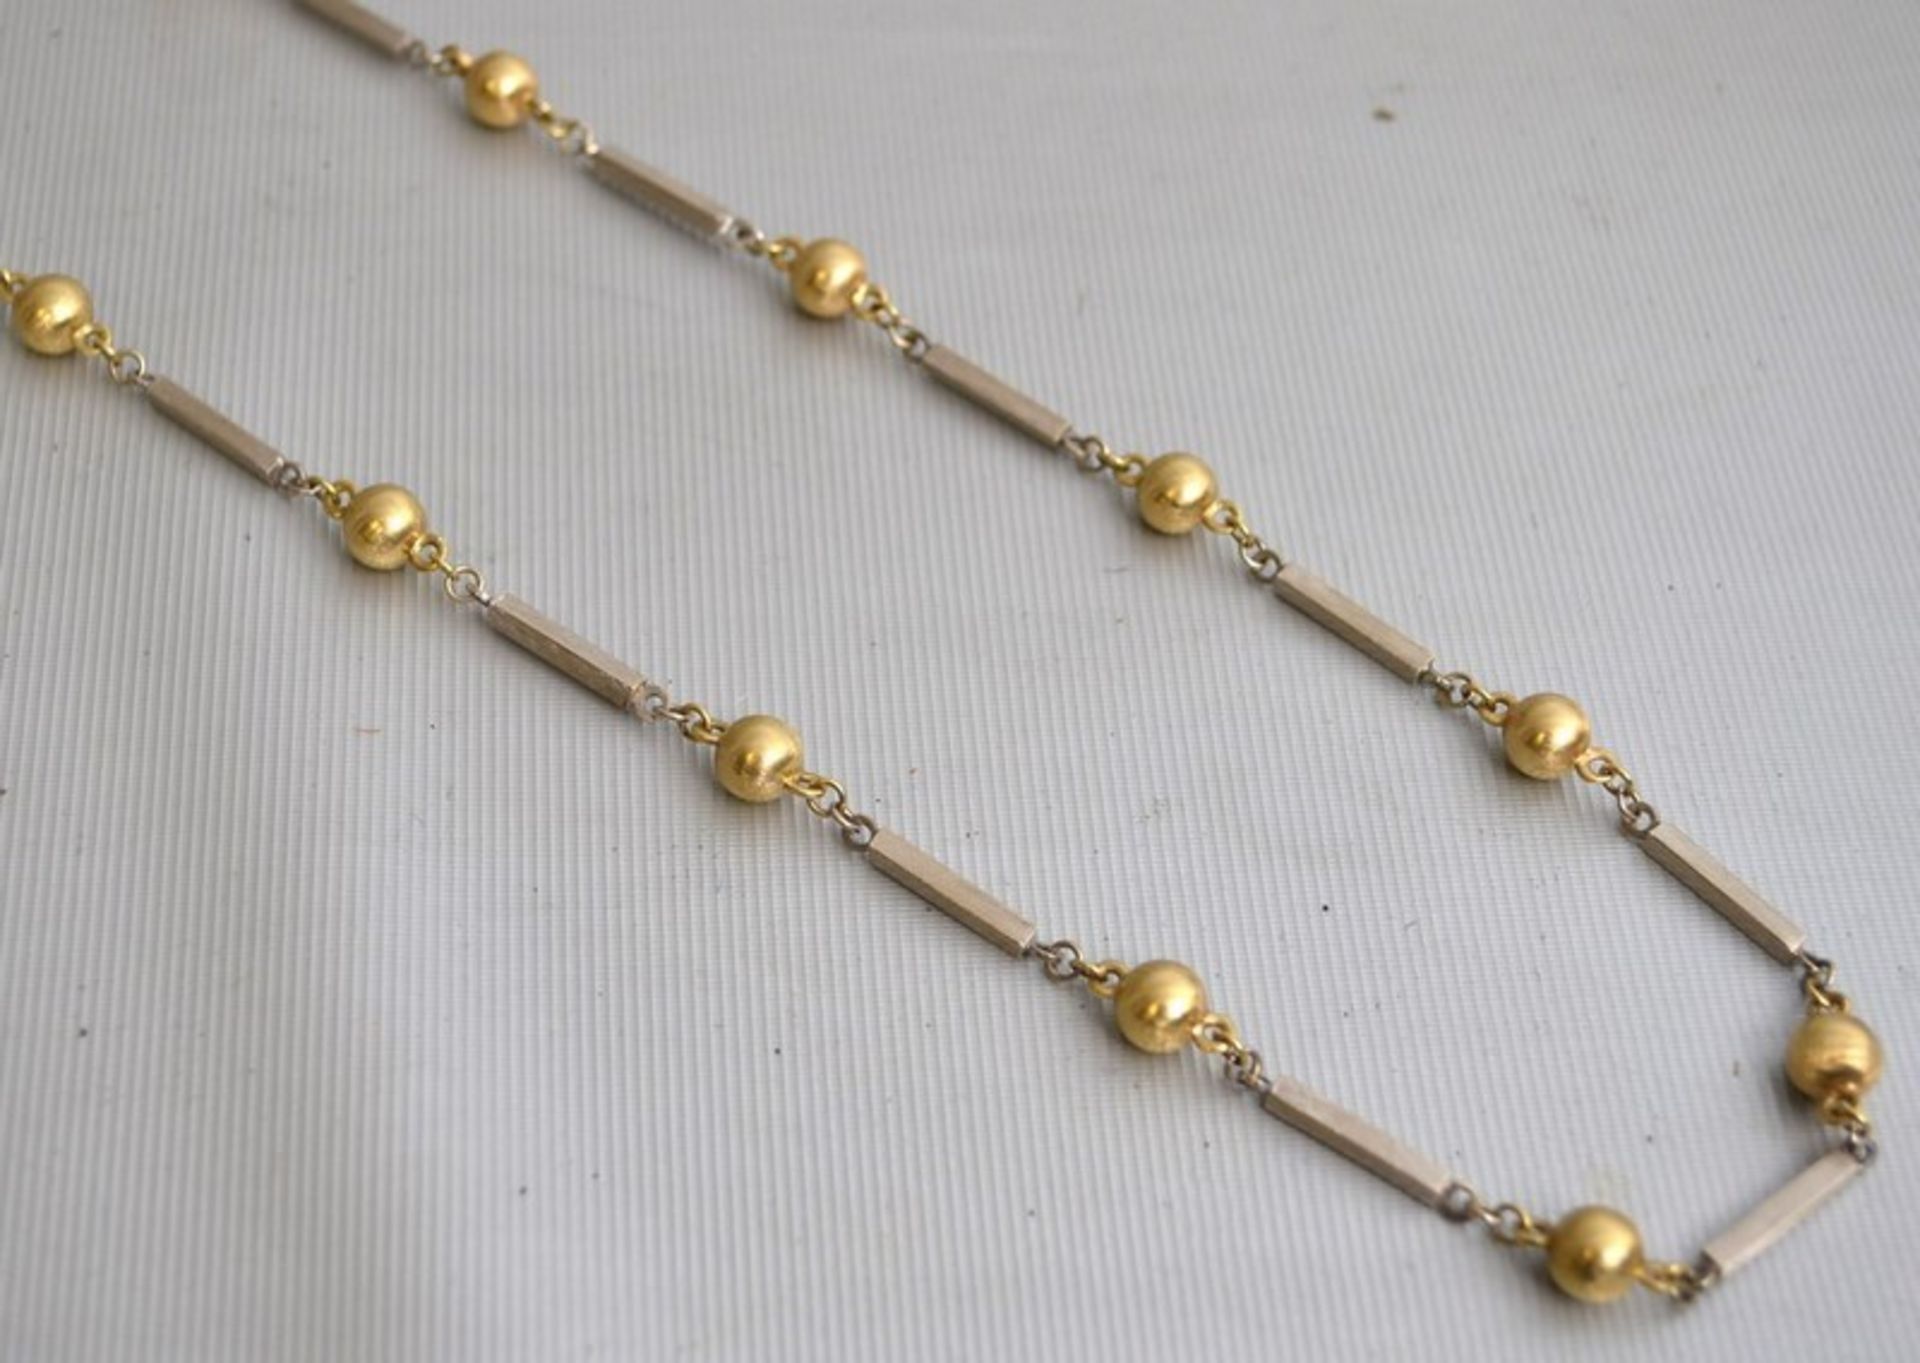 Halskette 14 kt. Weiß- und Gelbgold, mit 15 goldenen Kugeln